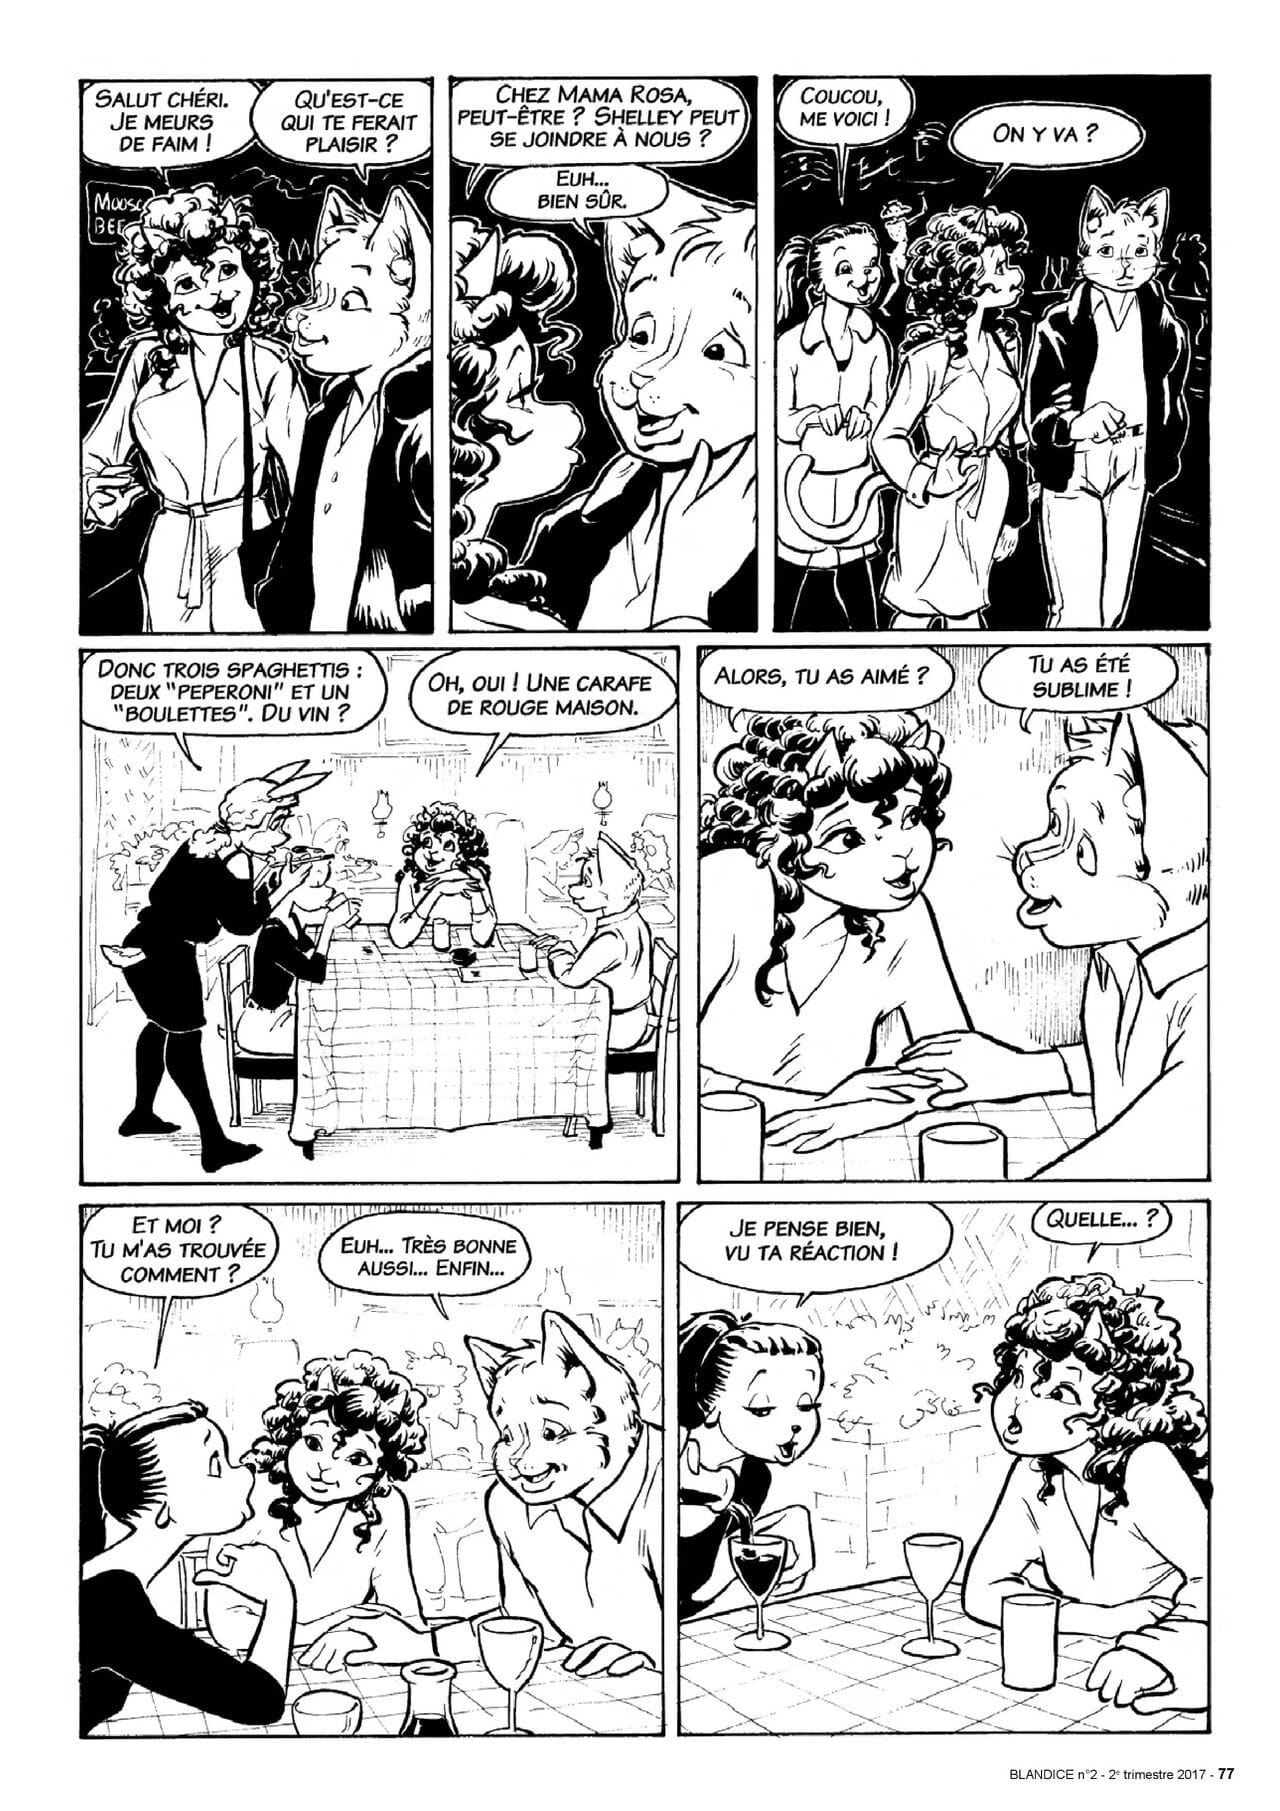 Blandice - 02 - Le romantisme dans la bd - part 4 page 1